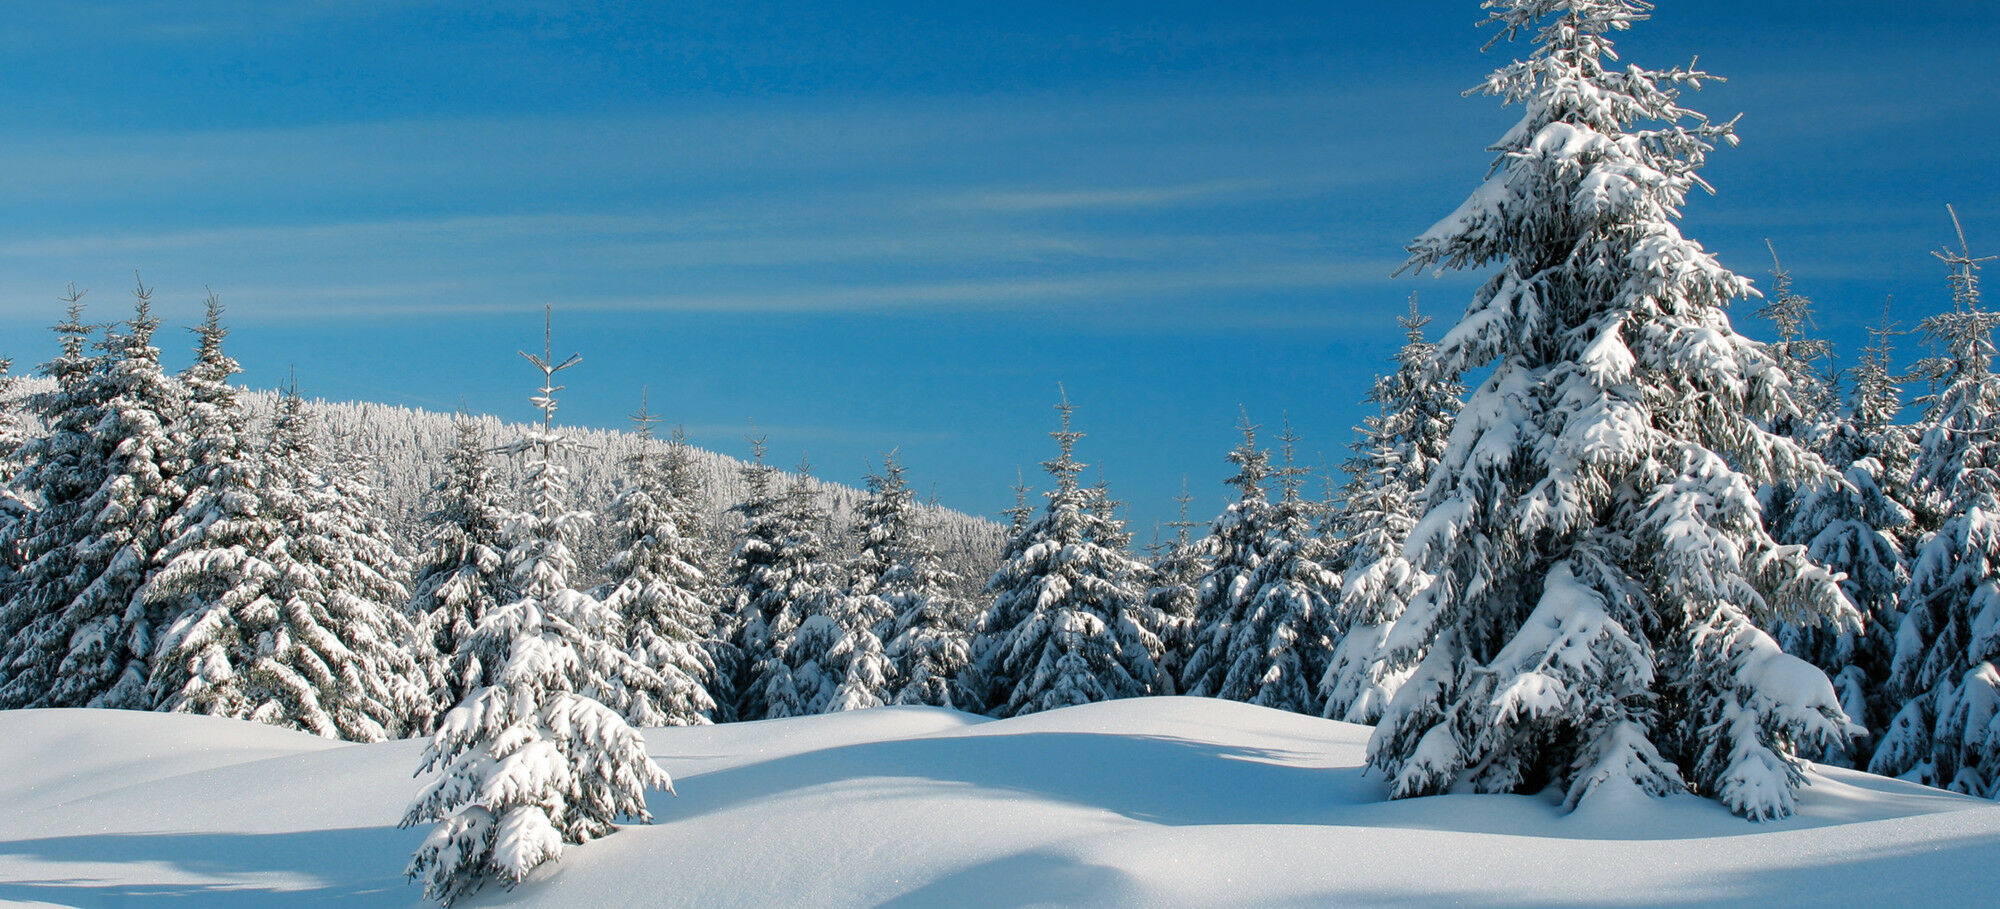 Stecklenberg (Harz) – Winterfahrt mit Schneegarantie